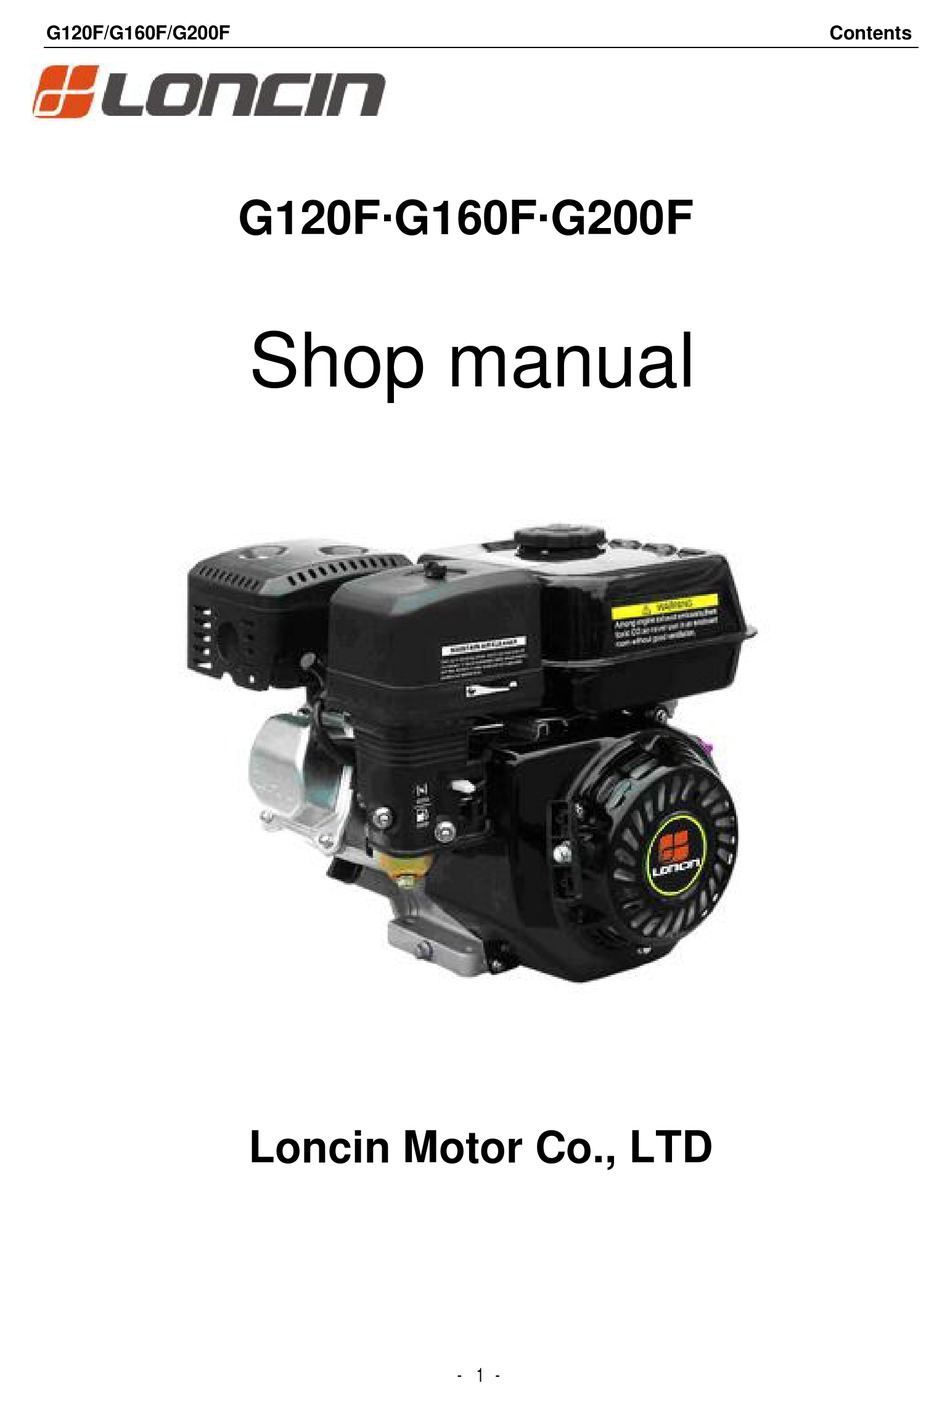 loncin 110cc engine repair manual